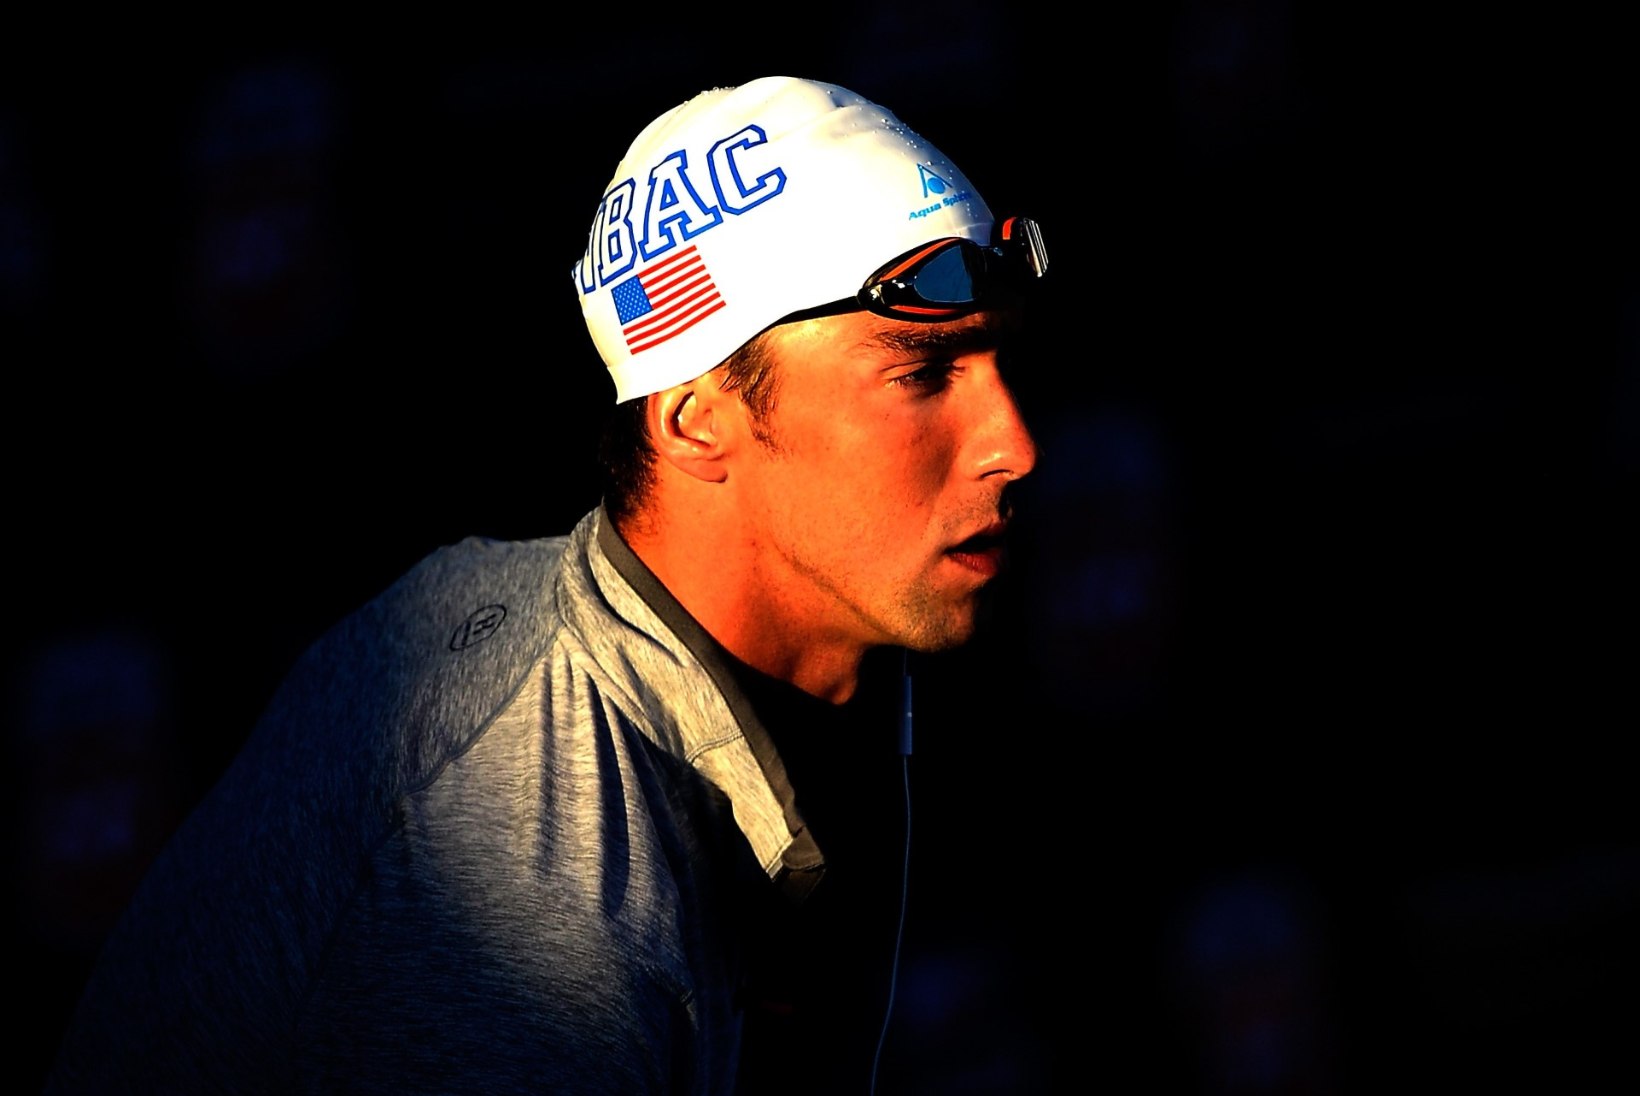 Purjuspäi autorooli istunud Michael Phelps sai USA ujumisliidult karmi karistuse